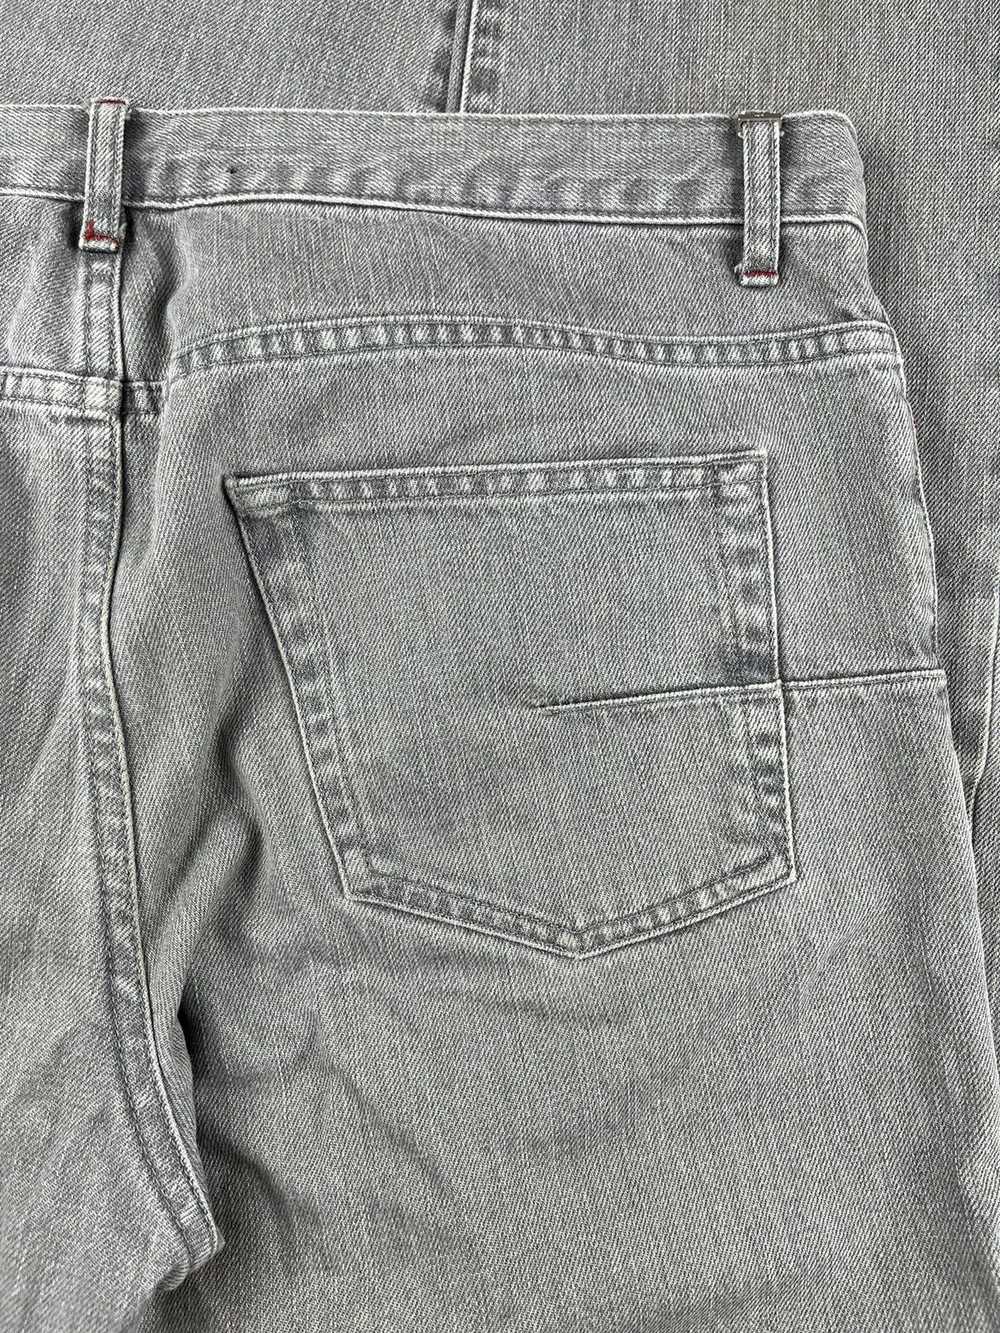 Dior Dior Homme Light Grey Denim Jeans - image 4